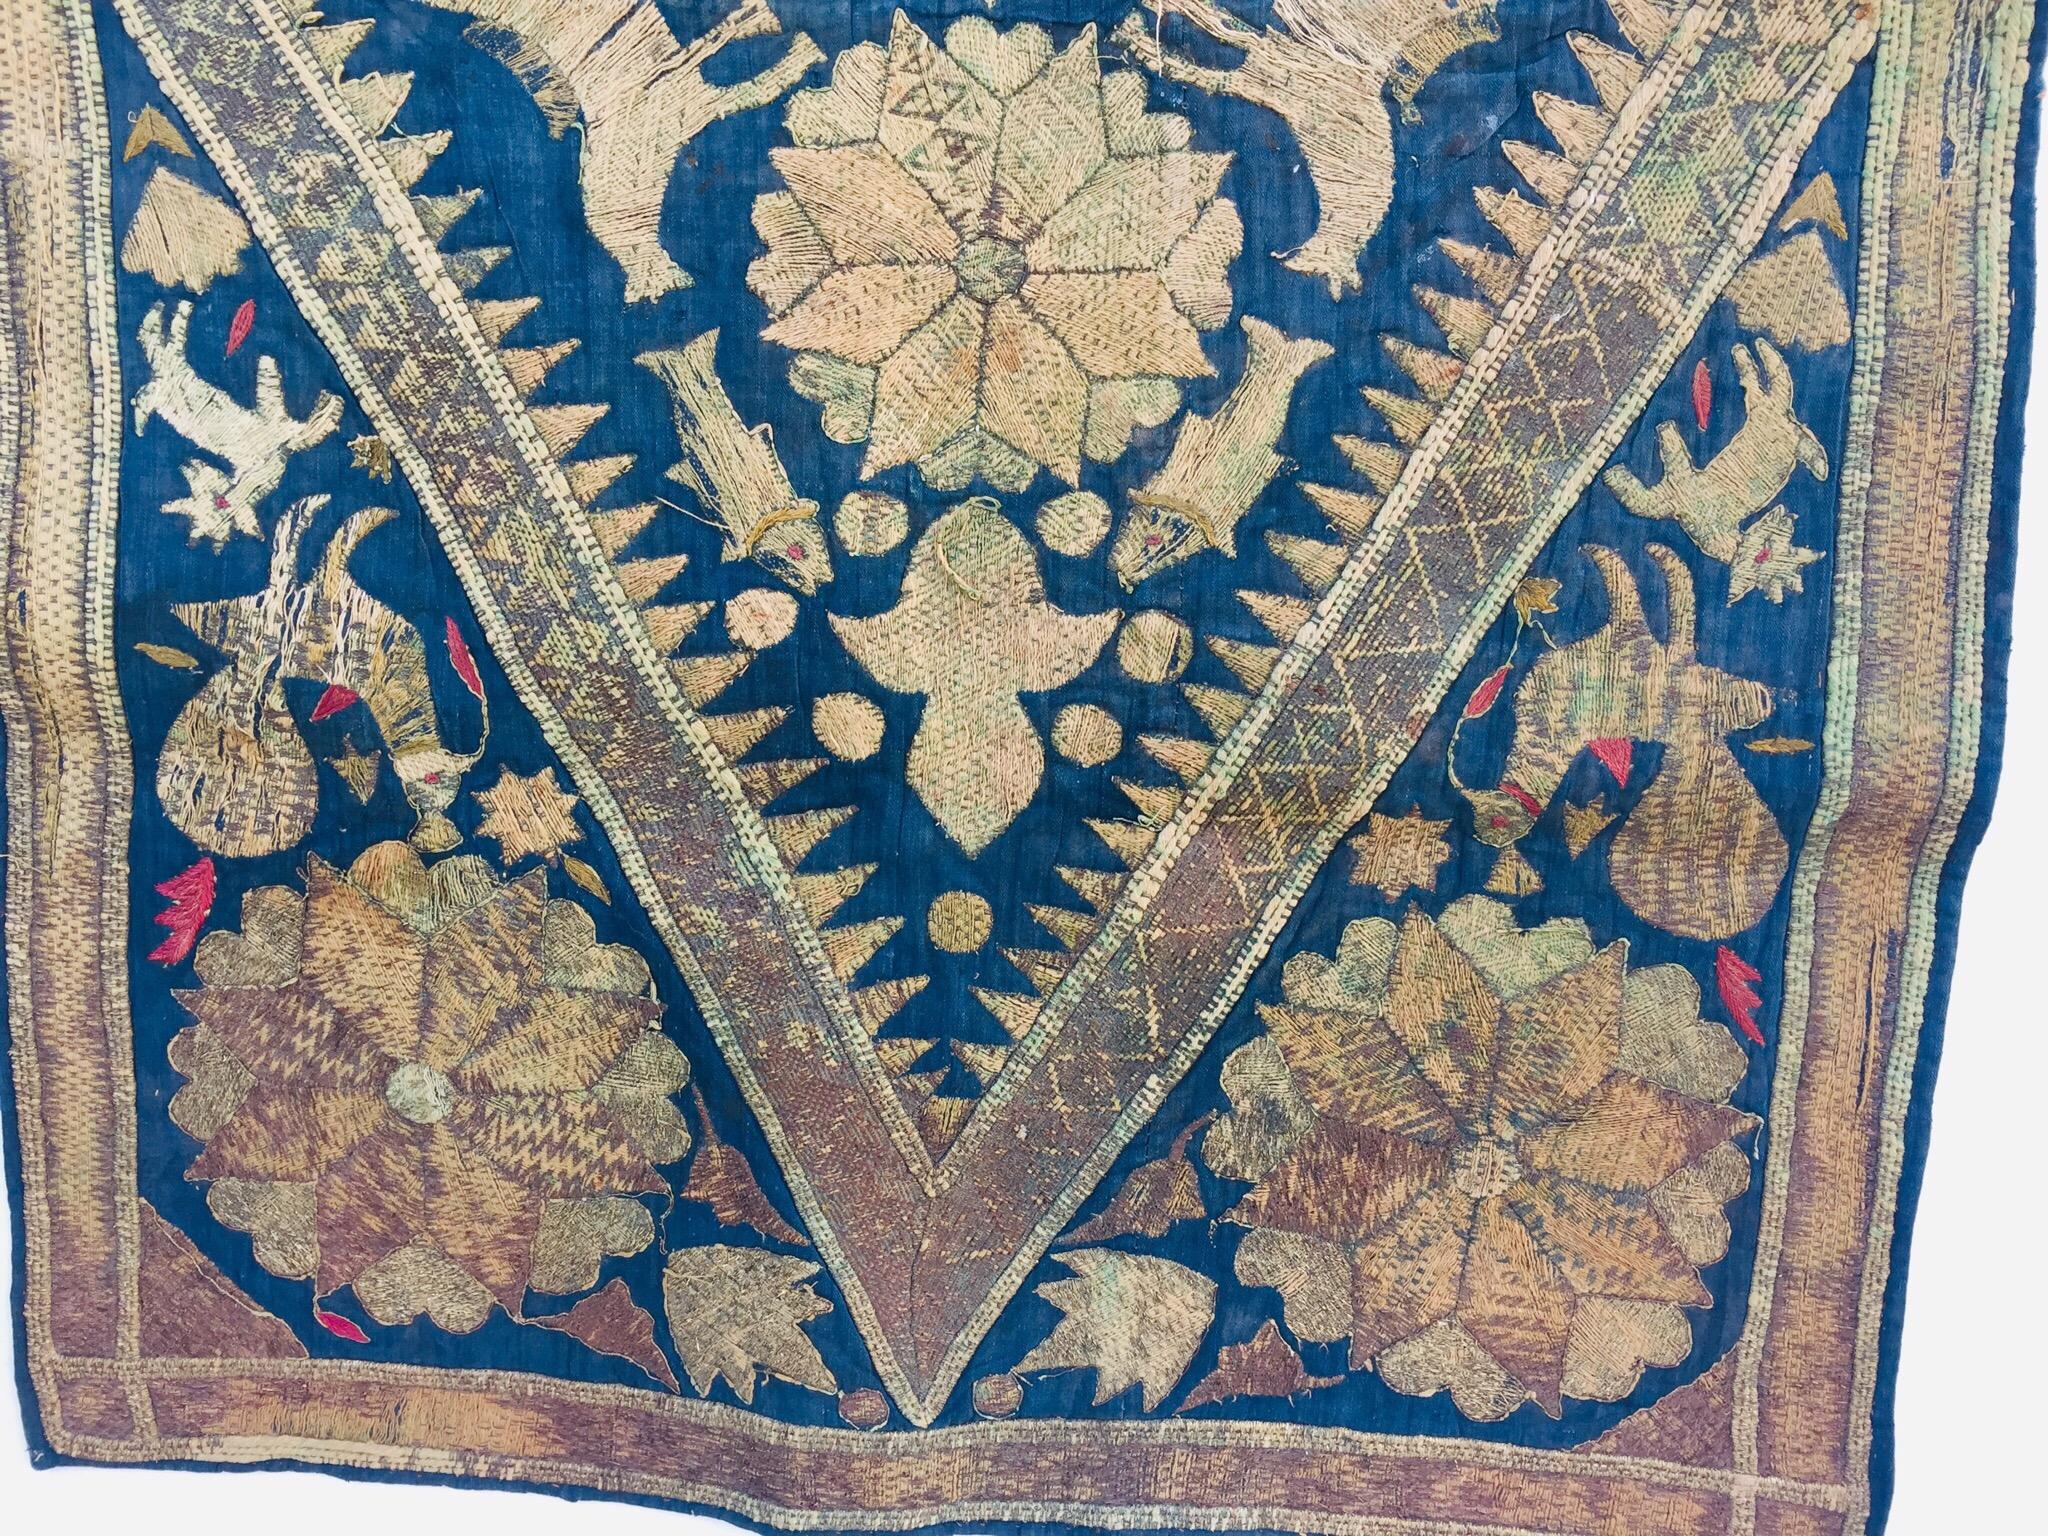 19th Century Moorish Islamic Ottoman Empire Textile Metallic Embroidered 5